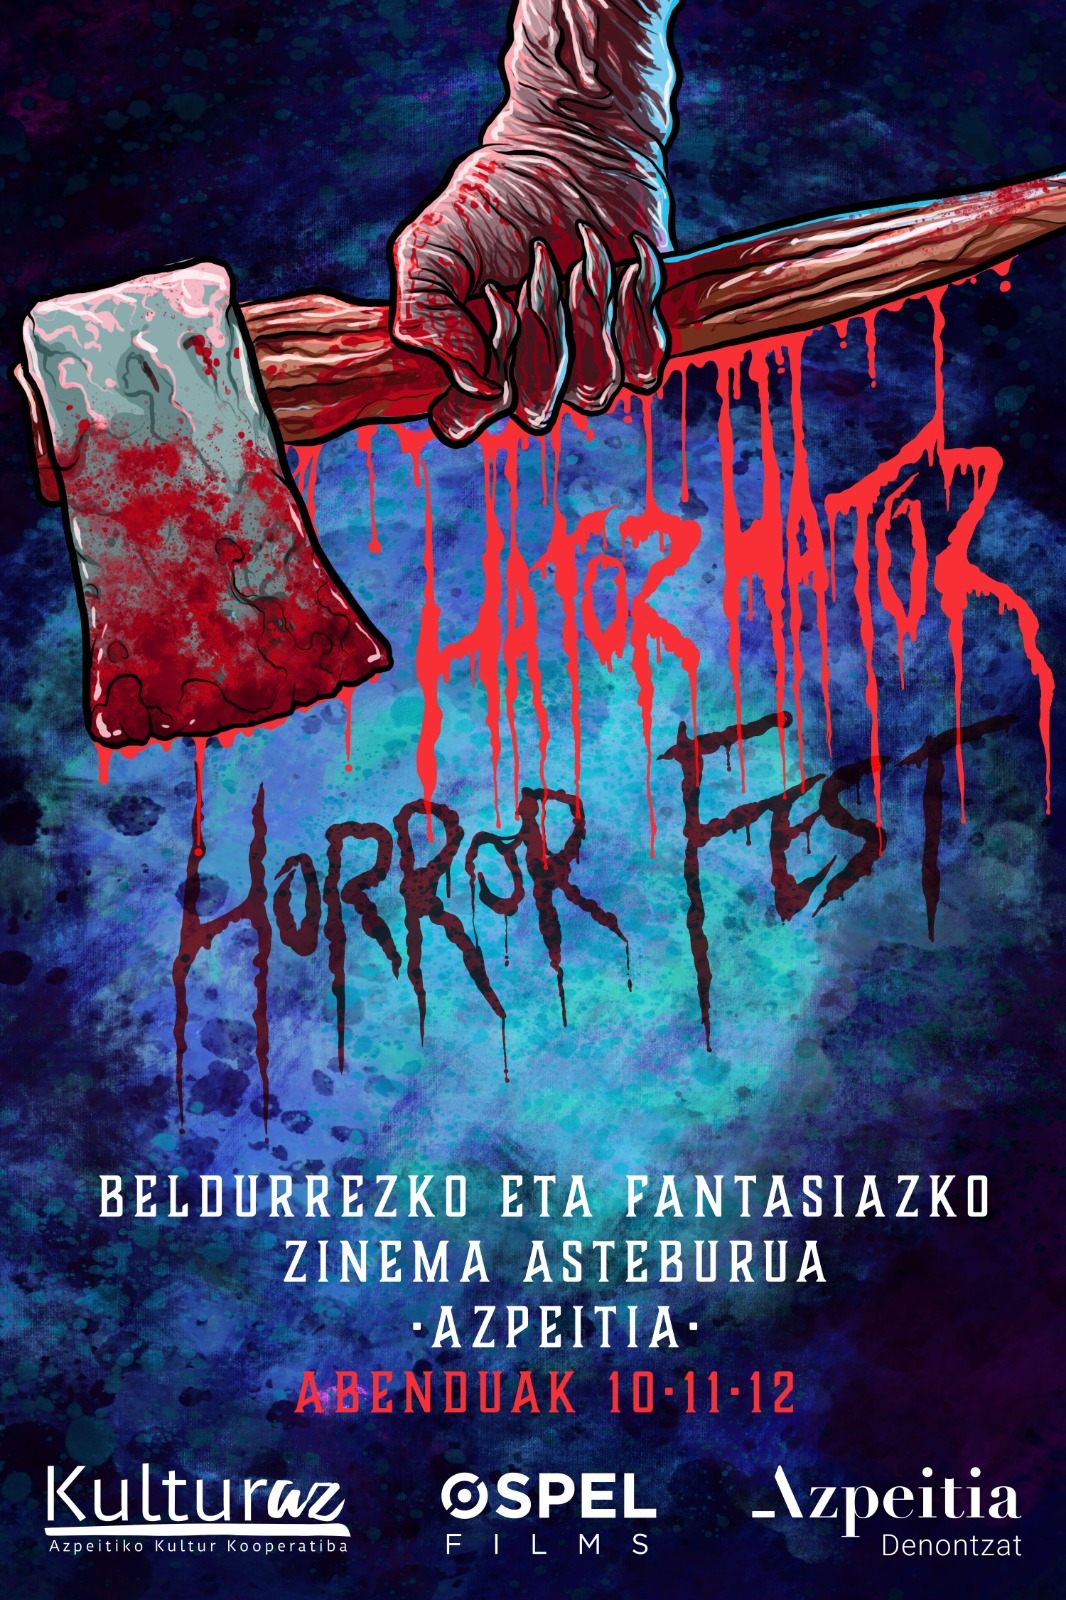 Zinema XXXXXXXXXXXXXXXXXX Hator Hator Horror Fest